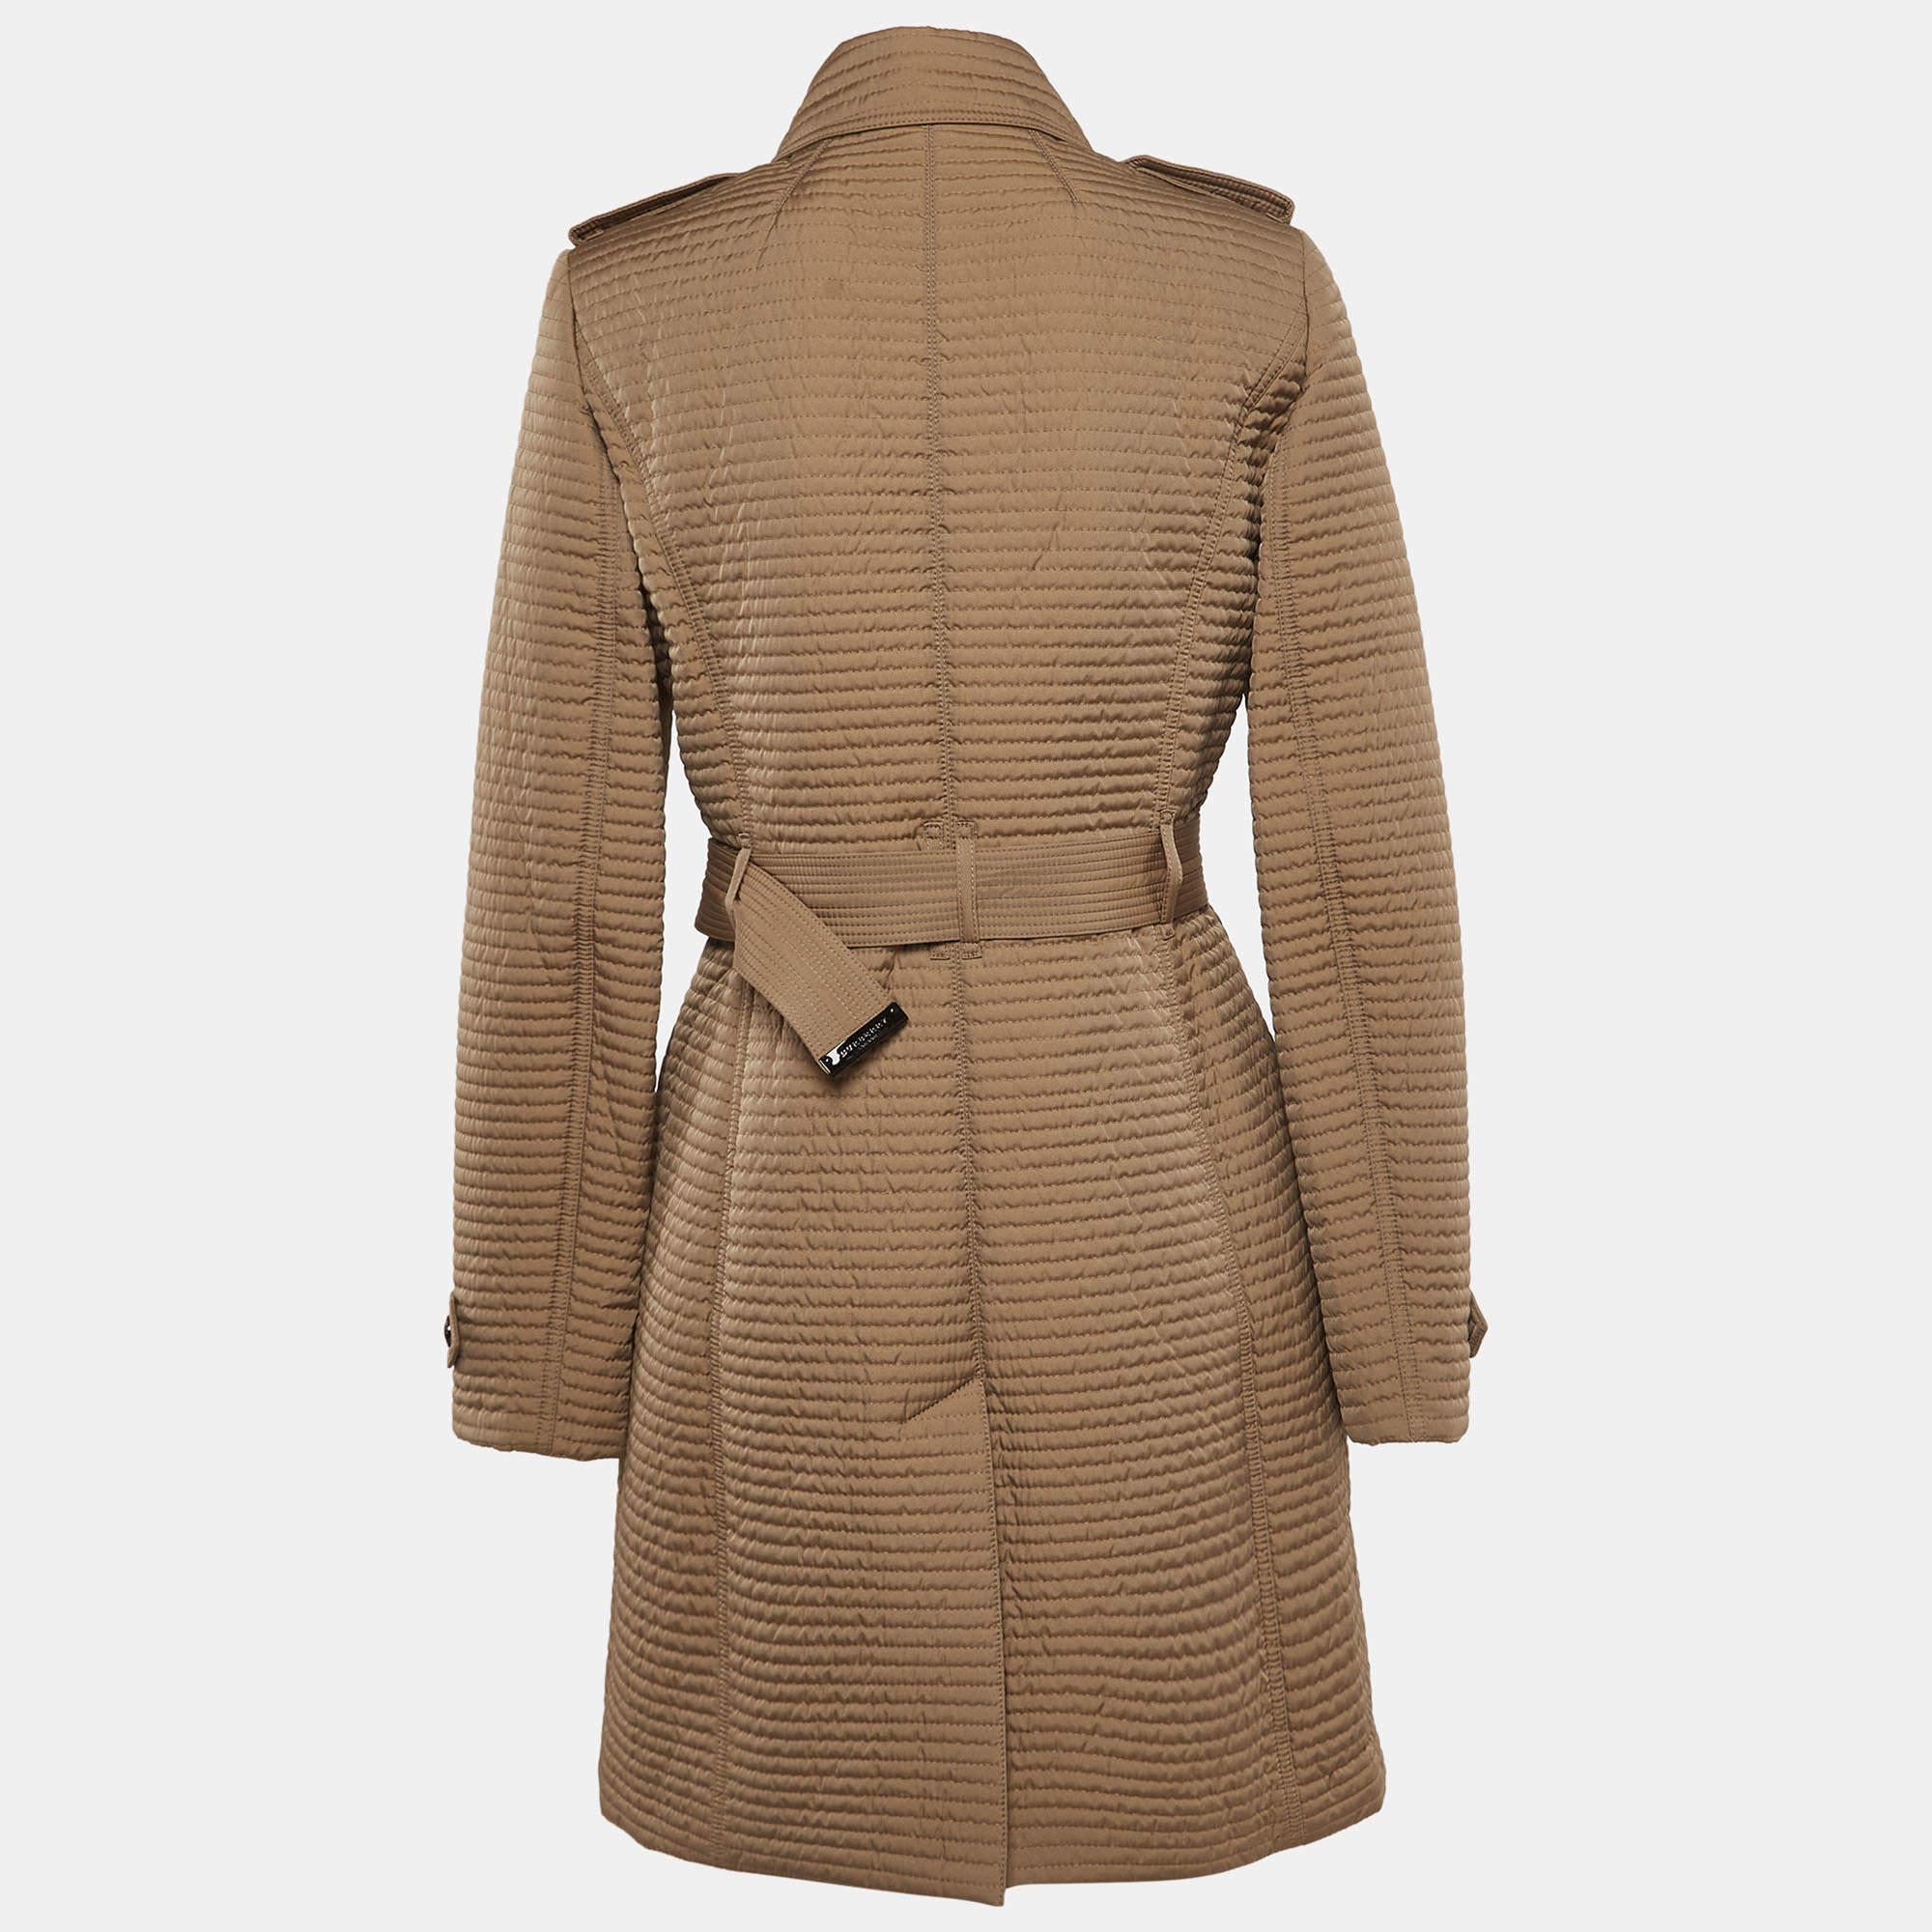 Confectionné par Burberry, ce manteau mi-long exquis est d'un grand raffinement avec sa riche teinte brune et son motif matelassé. La silhouette à double boutonnage ajoute une touche d'élégance intemporelle, tandis que la matière synthétique assure